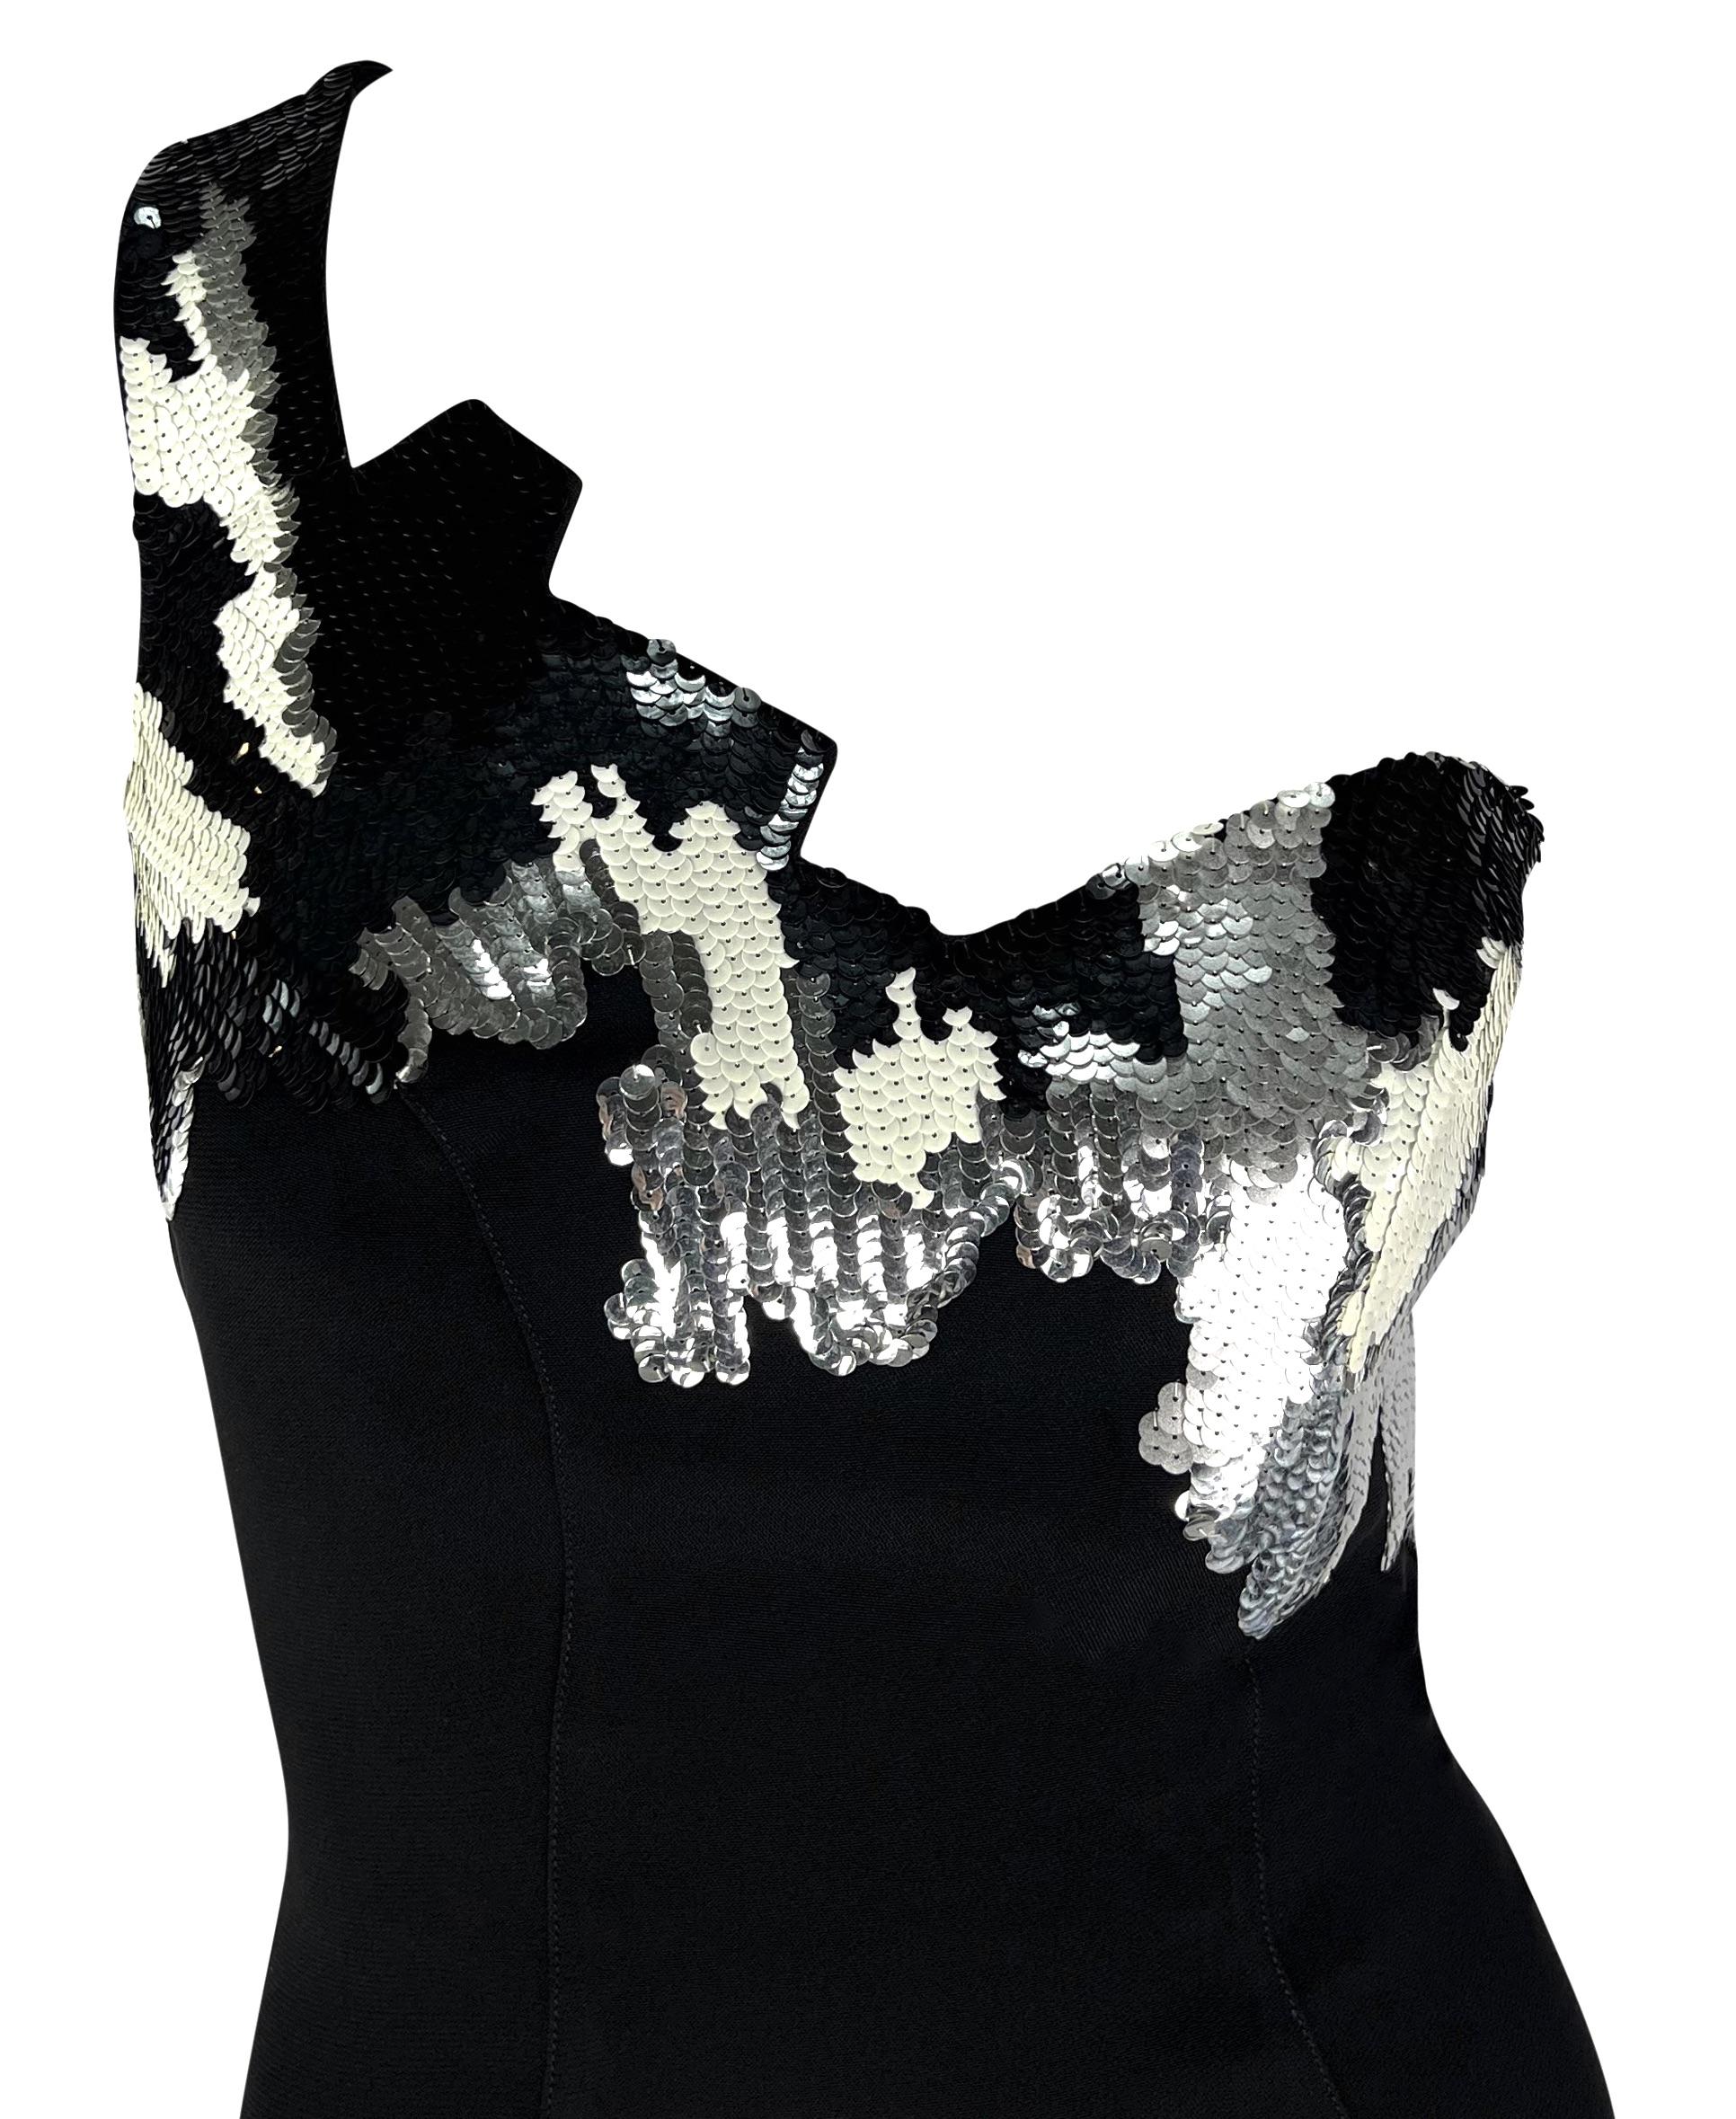 Manfred Mugler entwarf dieses umwerfende schwarze Minikleid von Thierry Mugler für die Herbst/Winter 1989 Kollektion. Dieses bezaubernde Kleid hat einen einzelnen Träger und eine abstrakte, eckig geschnittene Brust, die mit schwarzen, weißen und